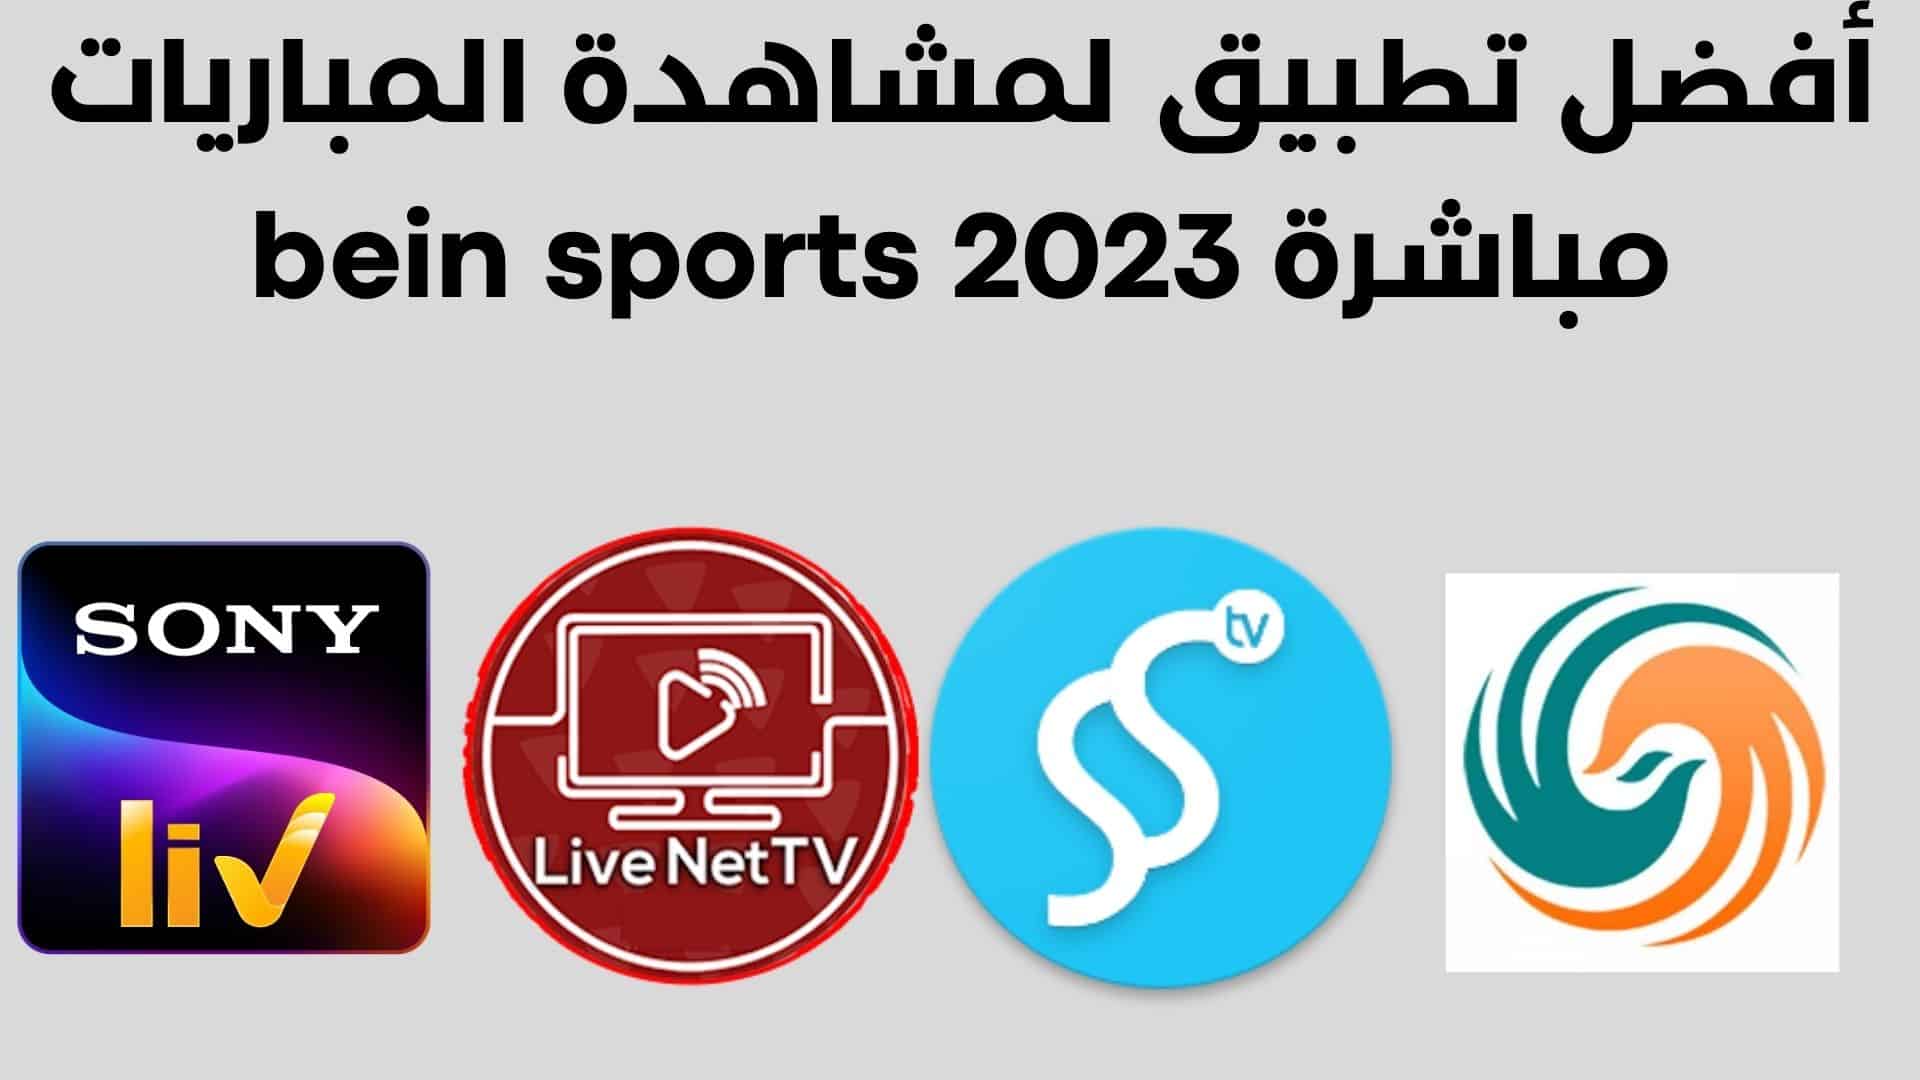 أفضل تطبيق لمشاهدة المباريات مباشرة bein sports 2023